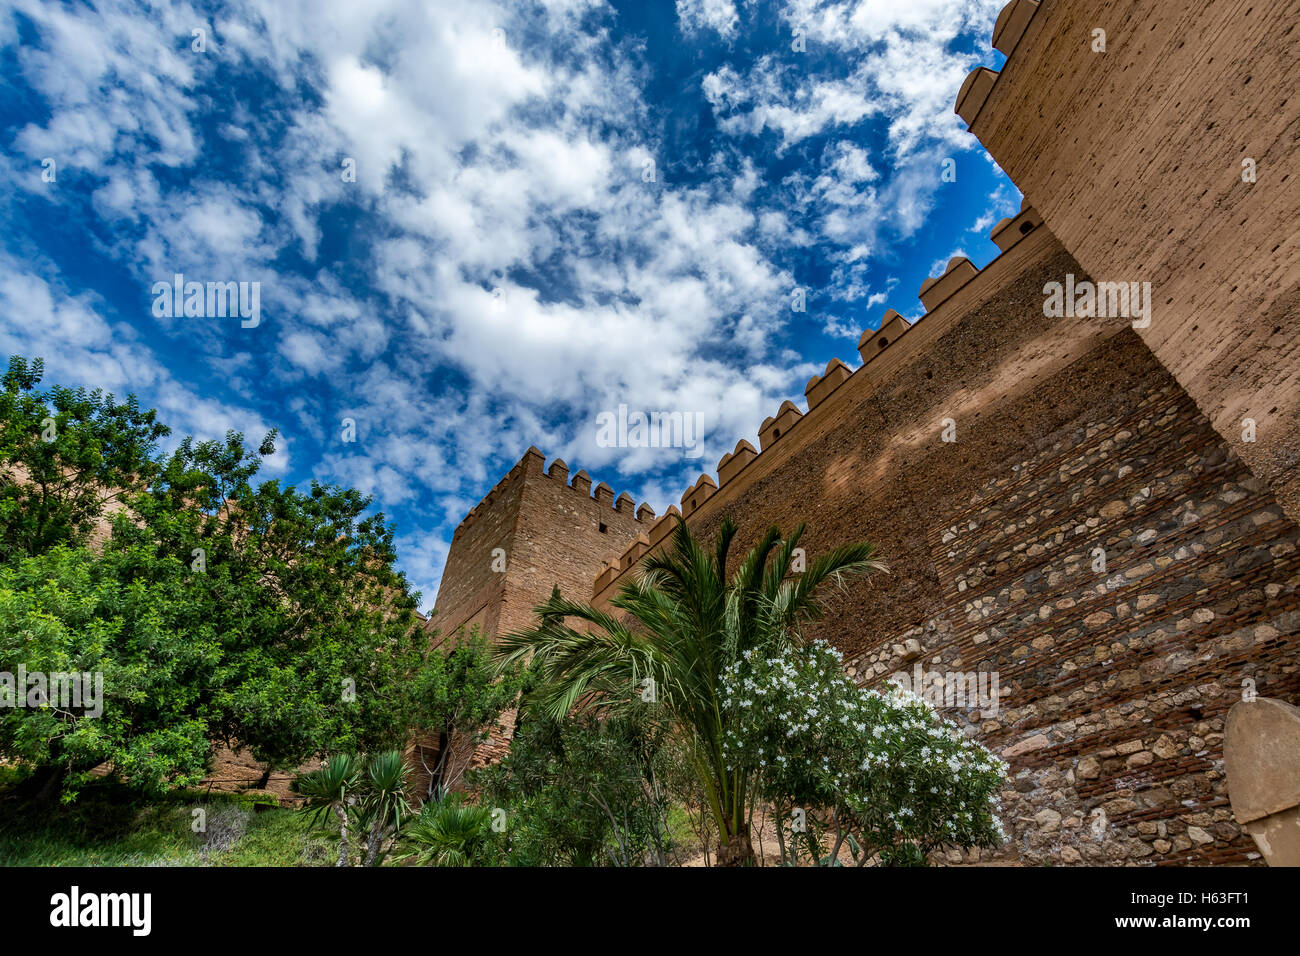 Vue sur les remparts de l'Alcazaba d'Almería (Almeria, Espagne) Château Banque D'Images